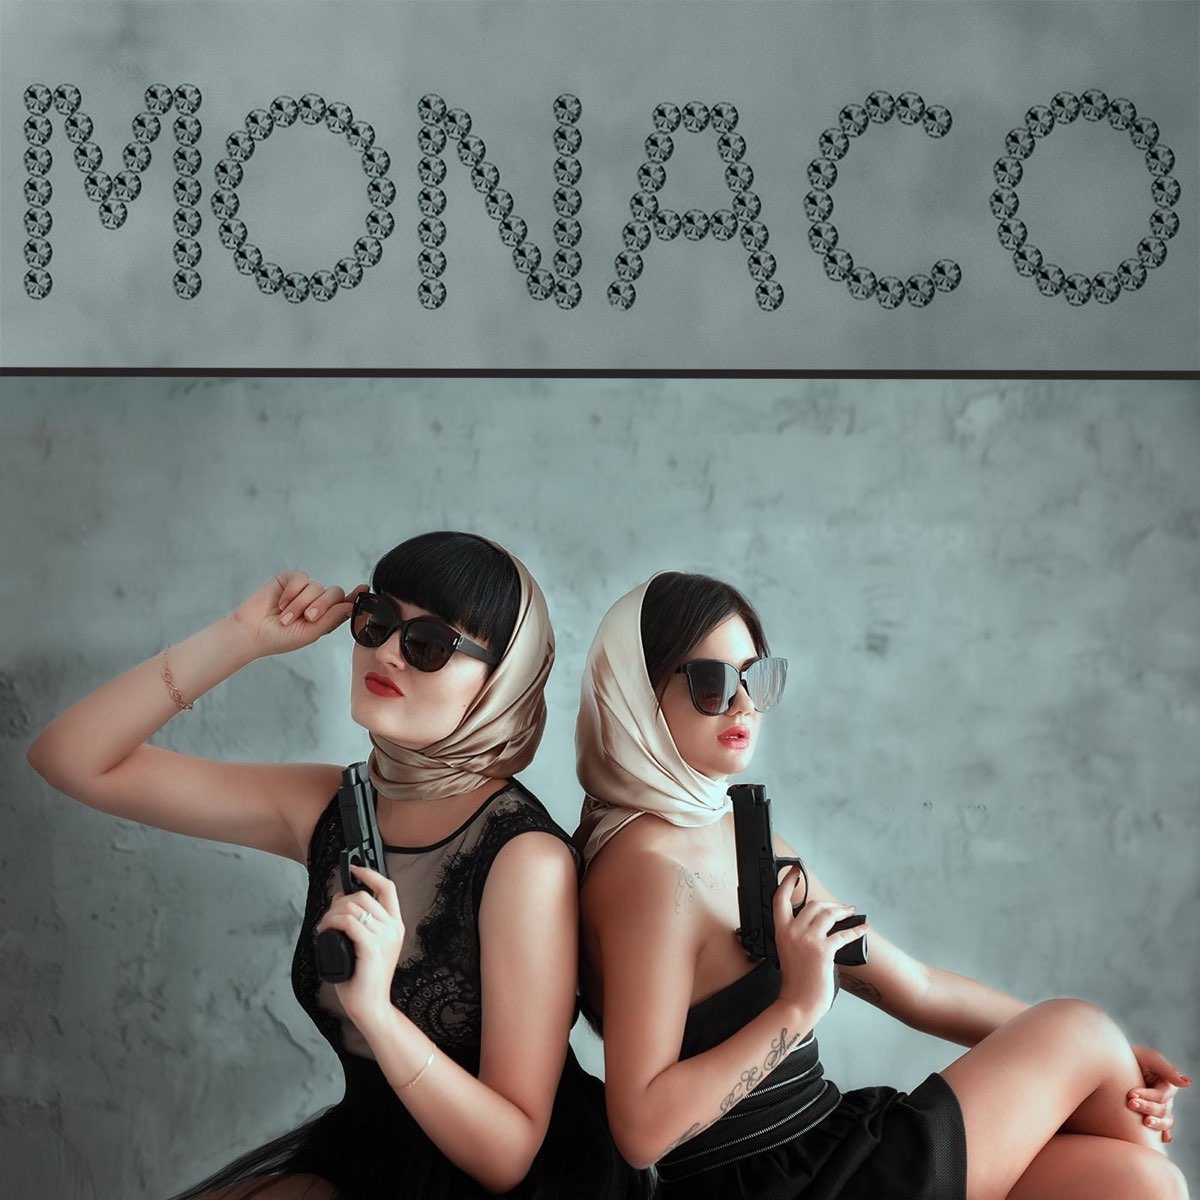 Монако песня. Группа Монако. "Monaco" "Music". Дуэт Монако певицы. Зачем монако песня слушать